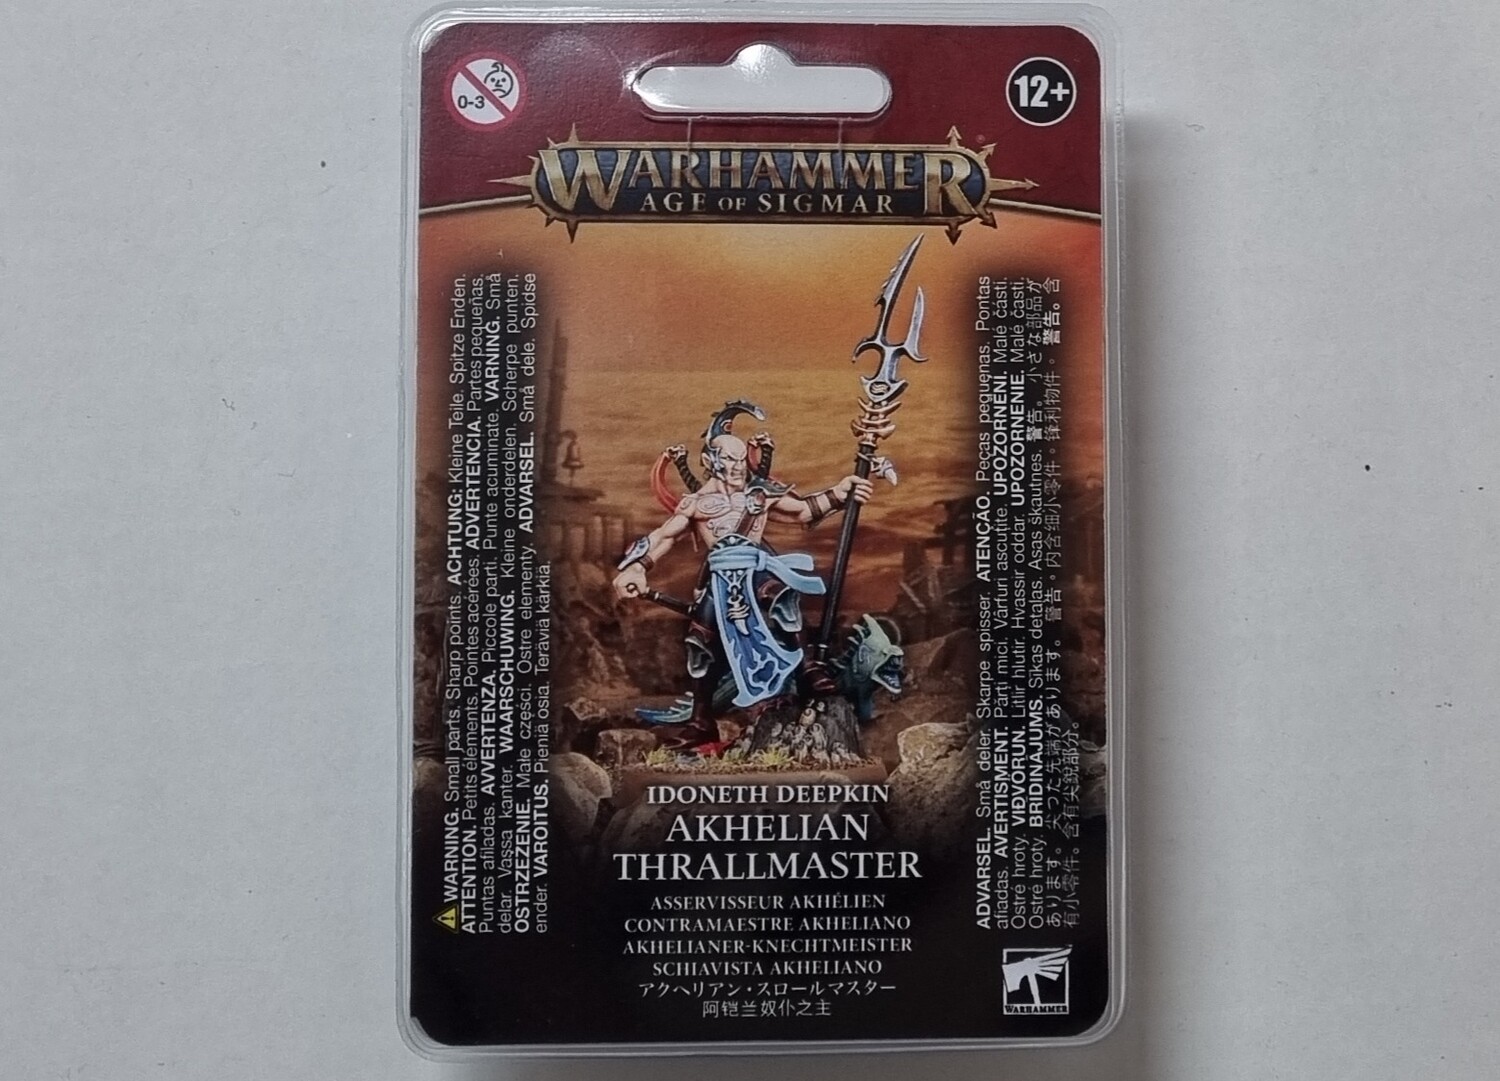 Warhammer, Age of Sigmar, 87-37, Idoneth Deepkin: Akhelian Thrailmaster